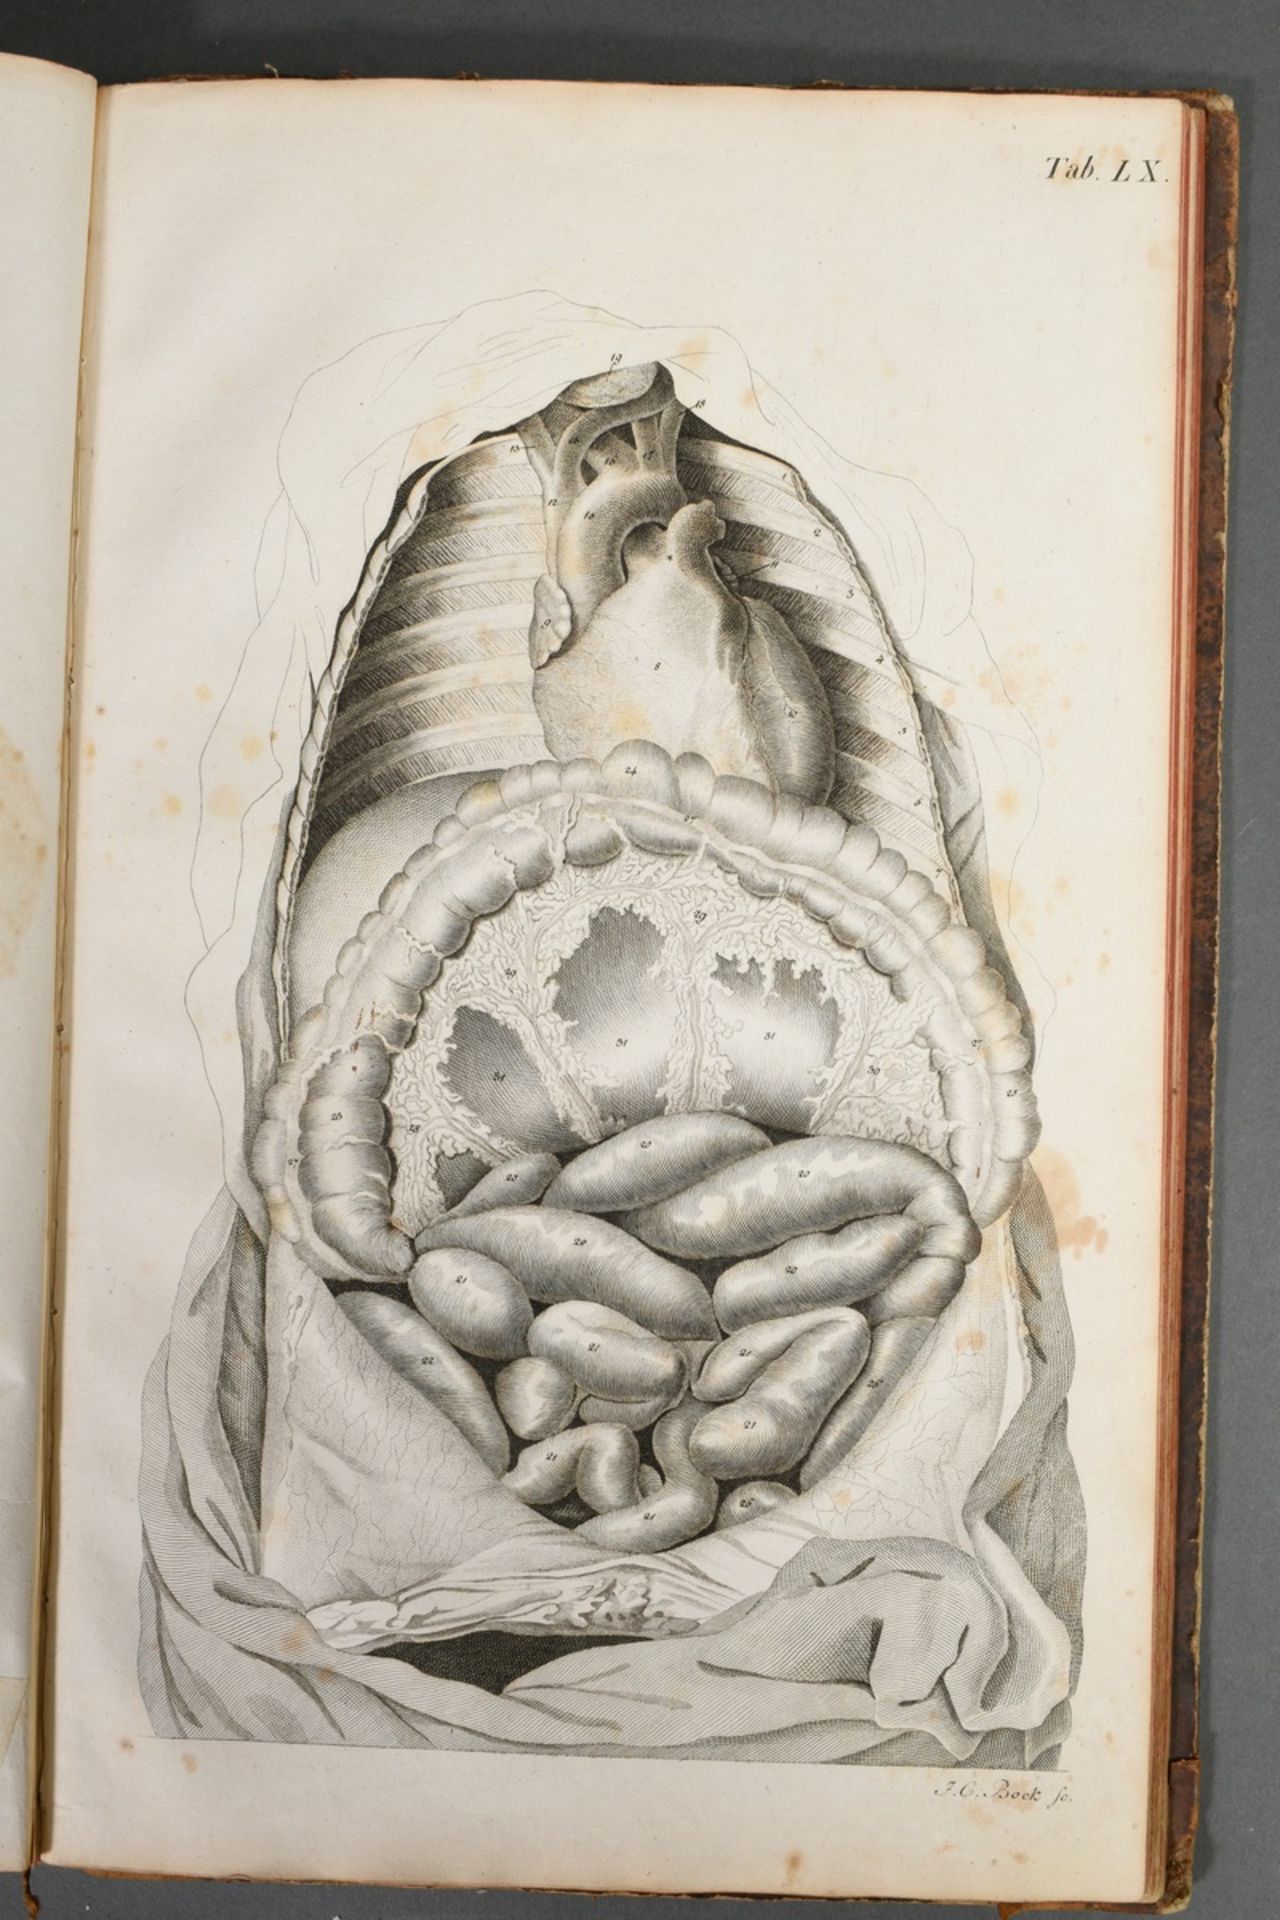 2 volumes Justus Christian von Loder "Tabularum Anatomicarum/ Volumen I und II" 1803, half-leather  - Image 7 of 8